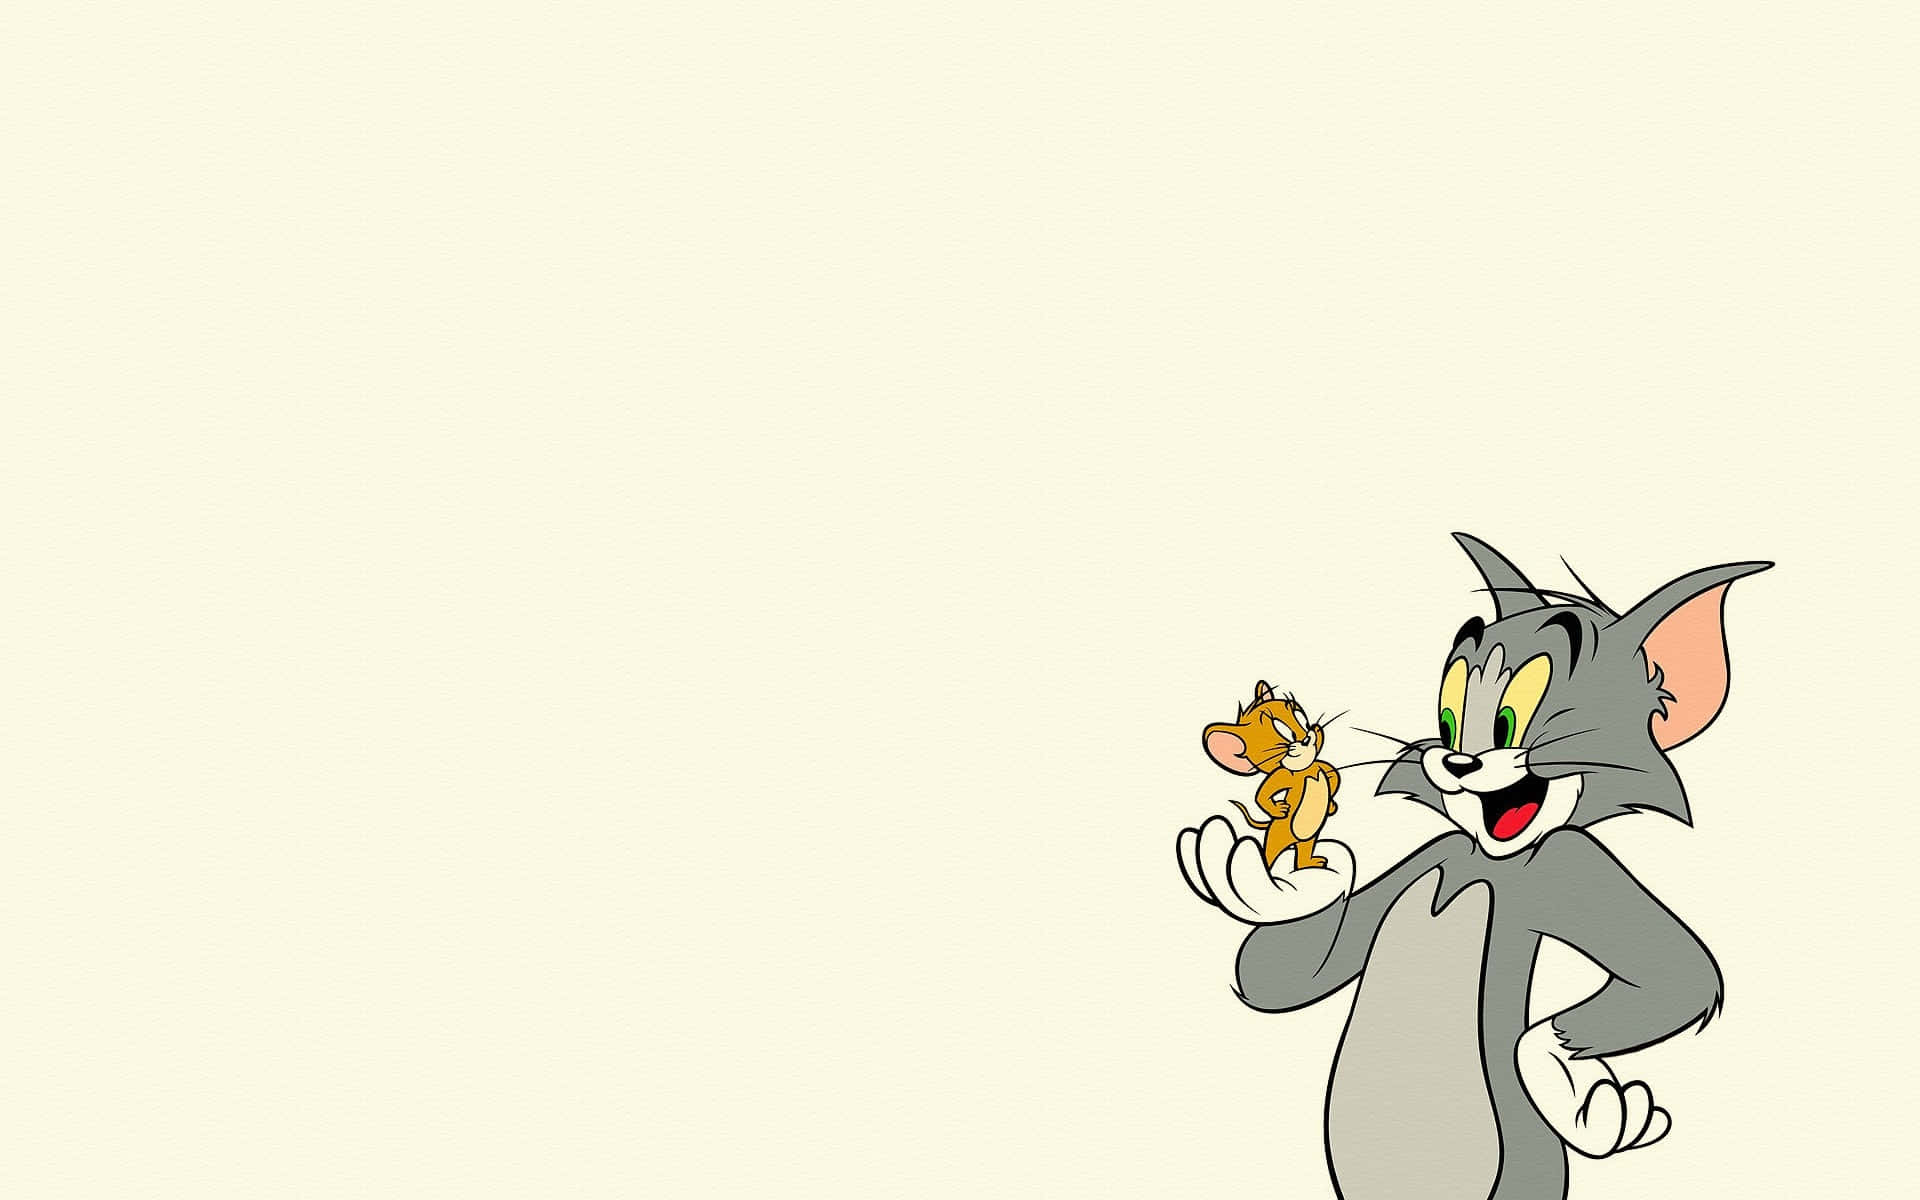 Tomy Jerry Intentan Sobrepasarse El Uno Al Otro.